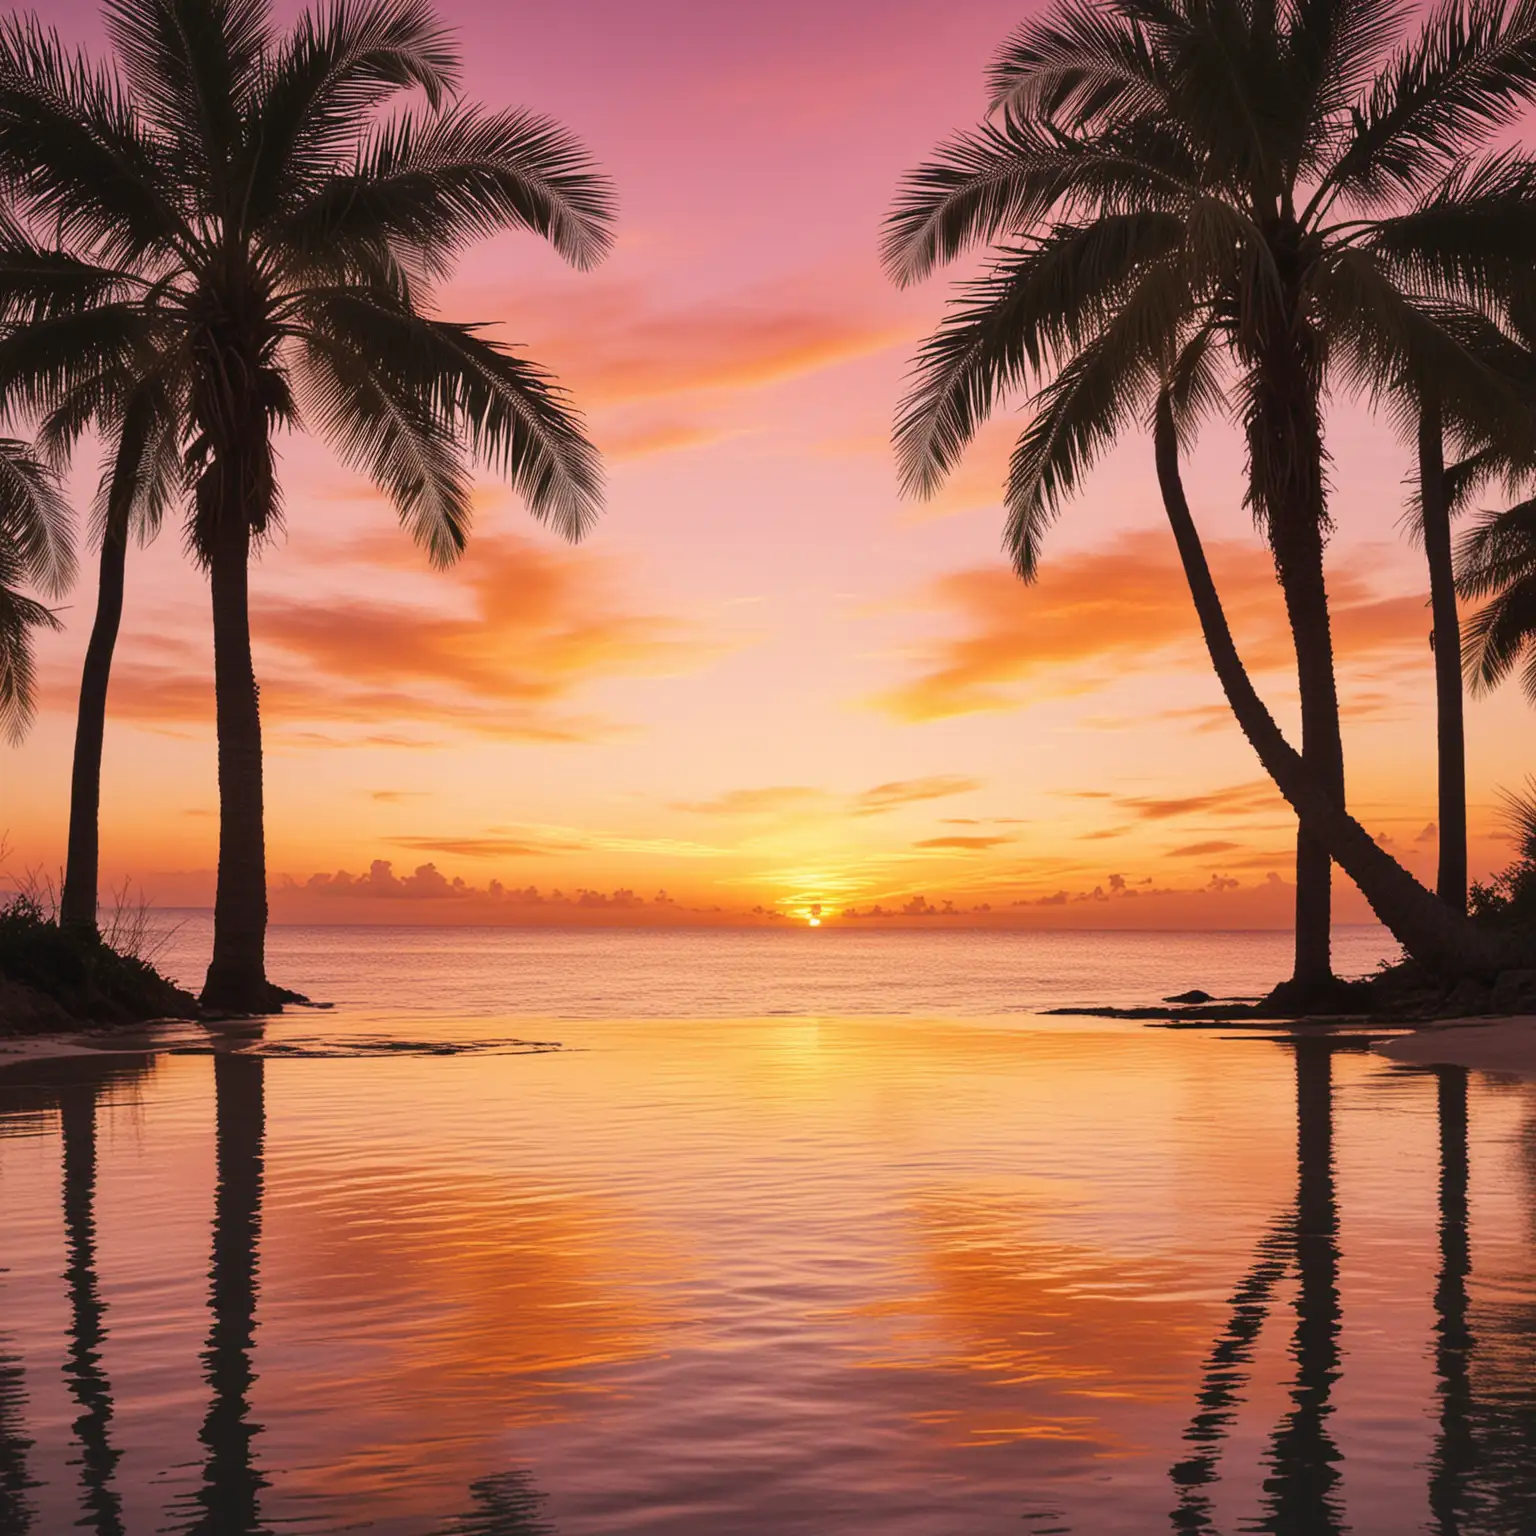 symmetrische Komposition. paradiesischer blick aufs Meer. Palmen nahmen das Foto ein. Sonnenuntergang